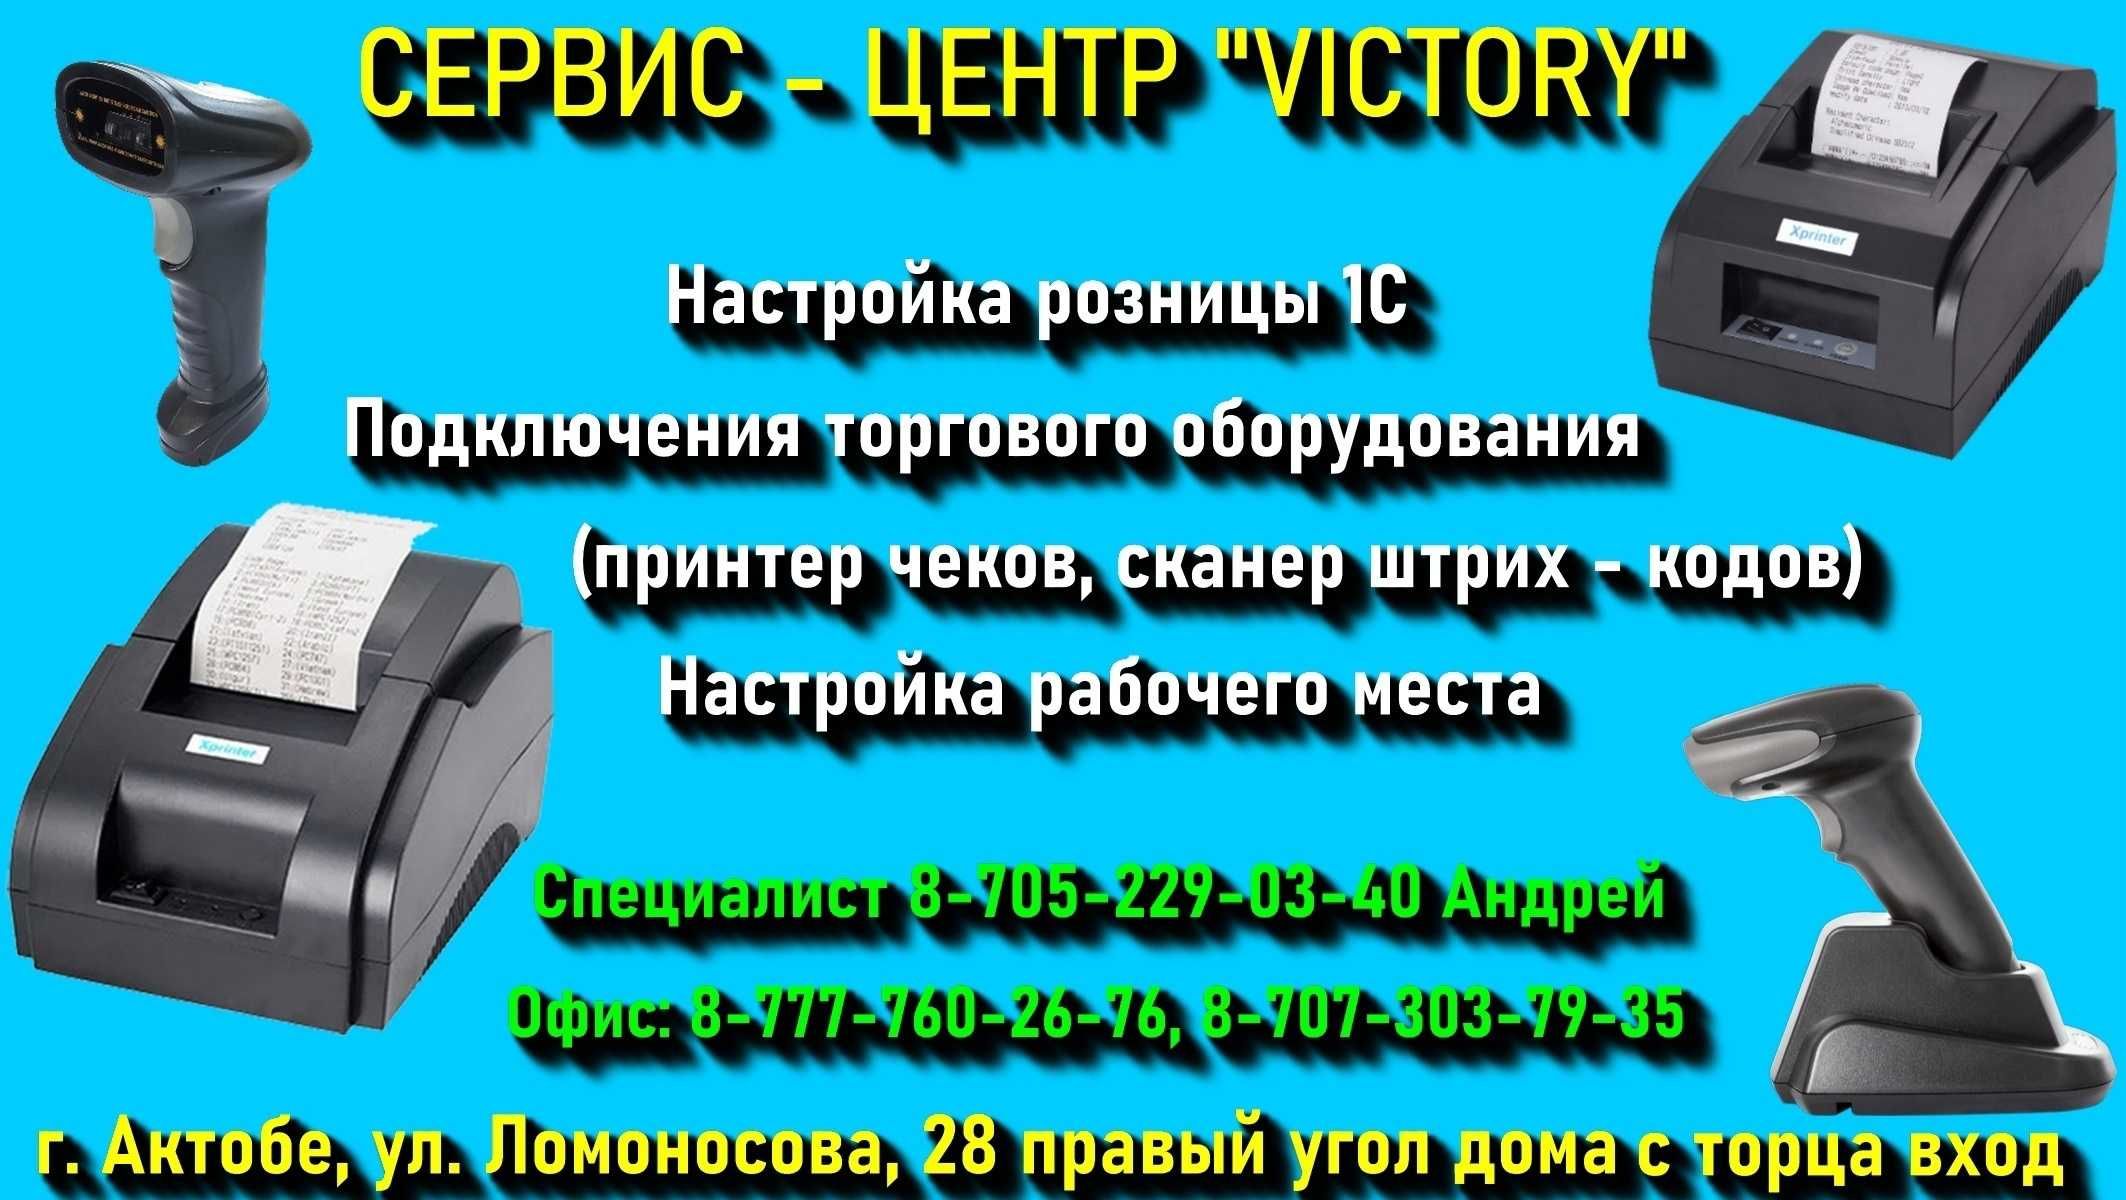 Сервис - центр "VICTORY" оказывает услуги по 1С - УДАЛЕННО И ВЫГОДНО!